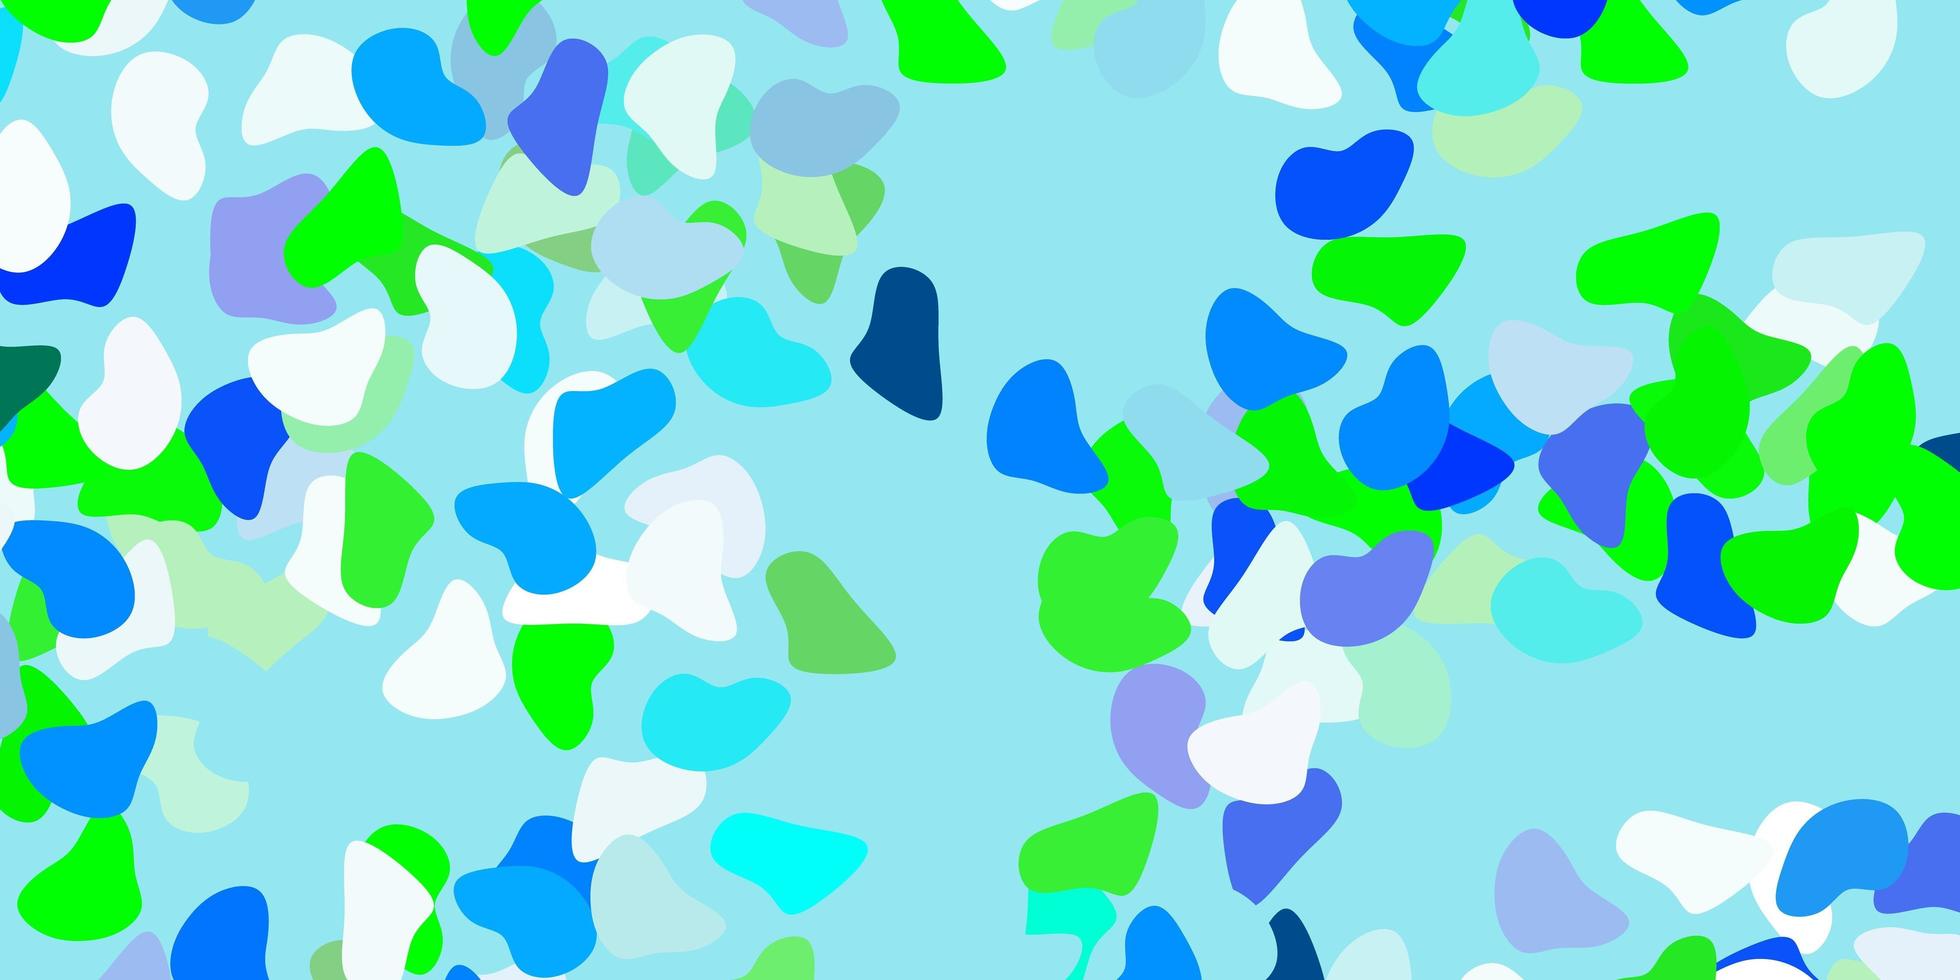 fond de vecteur bleu clair, vert avec des formes aléatoires.